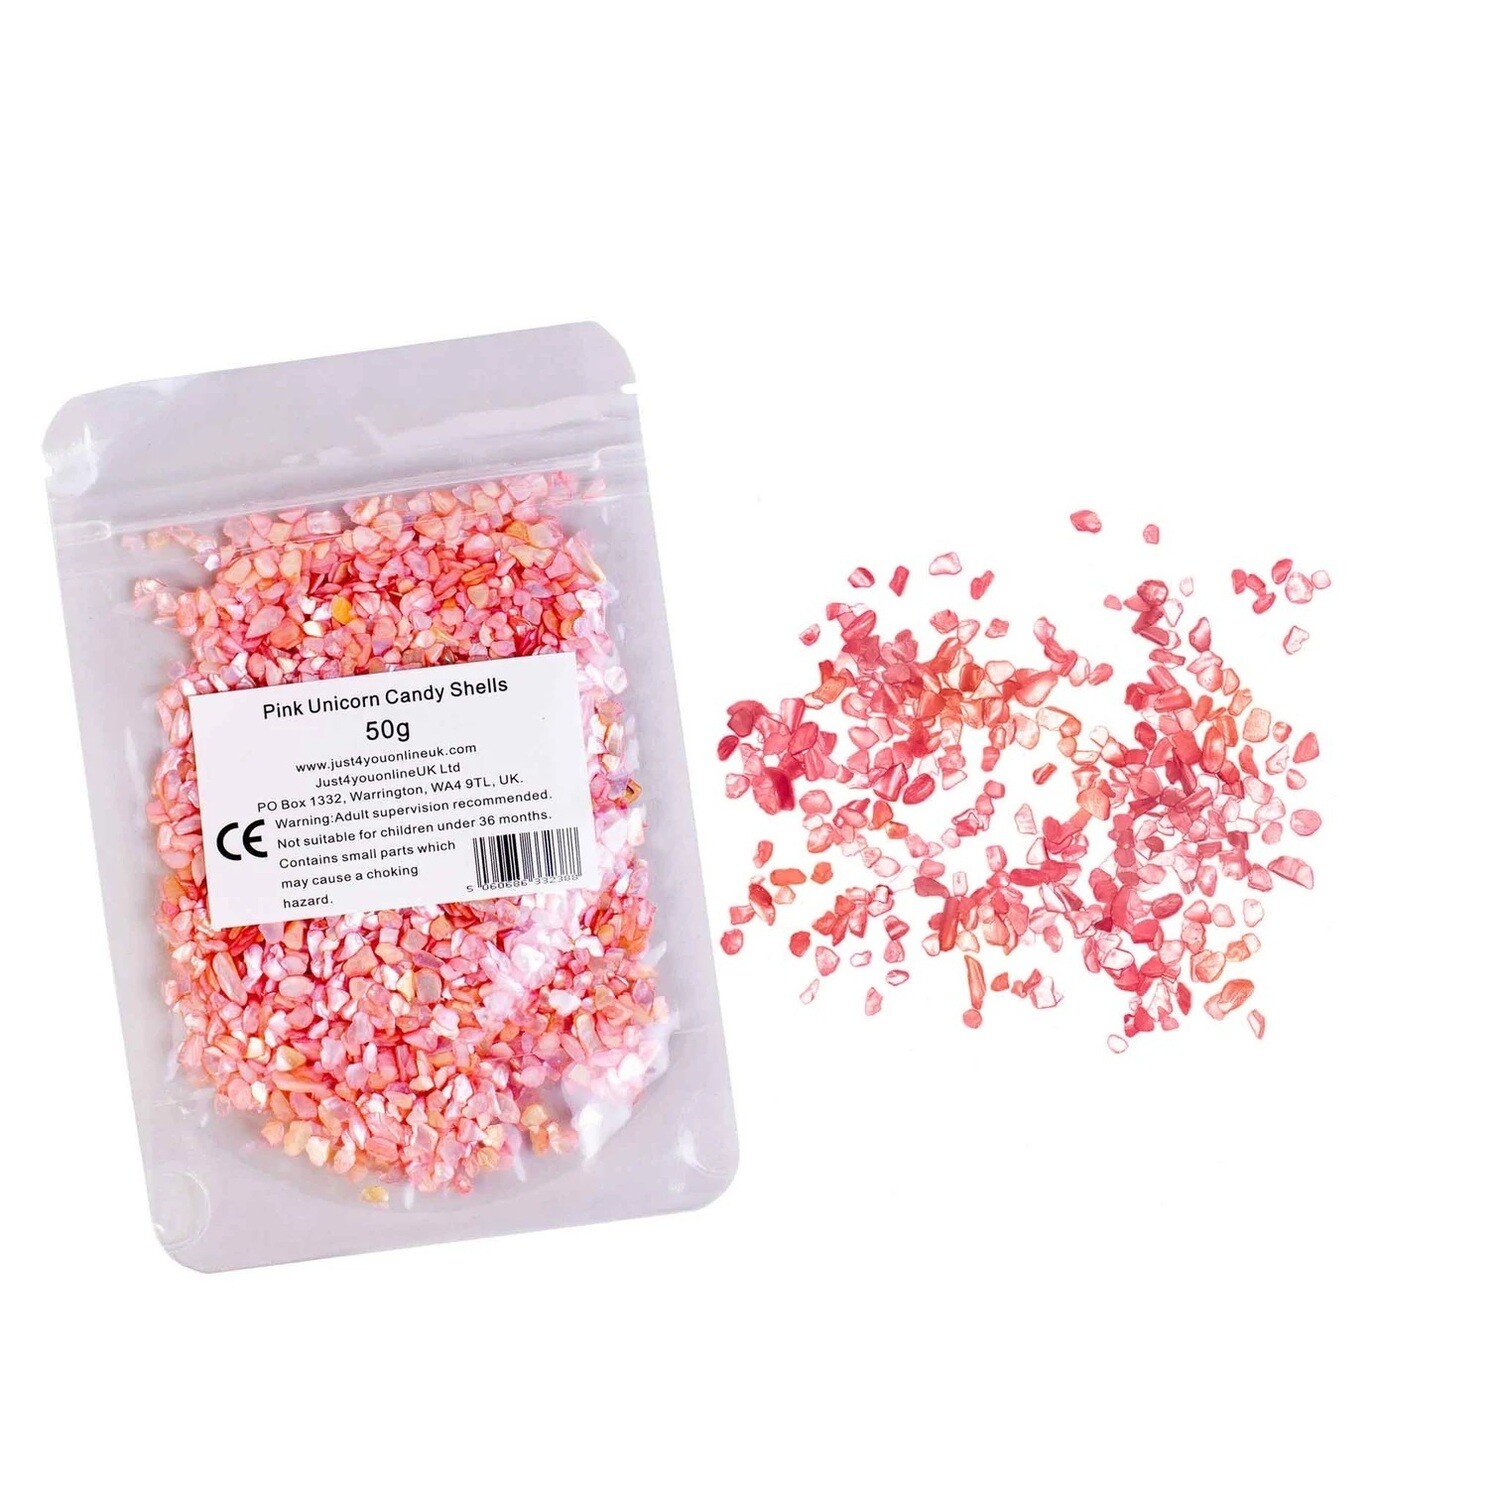 Pink Unicorn Candy Shells